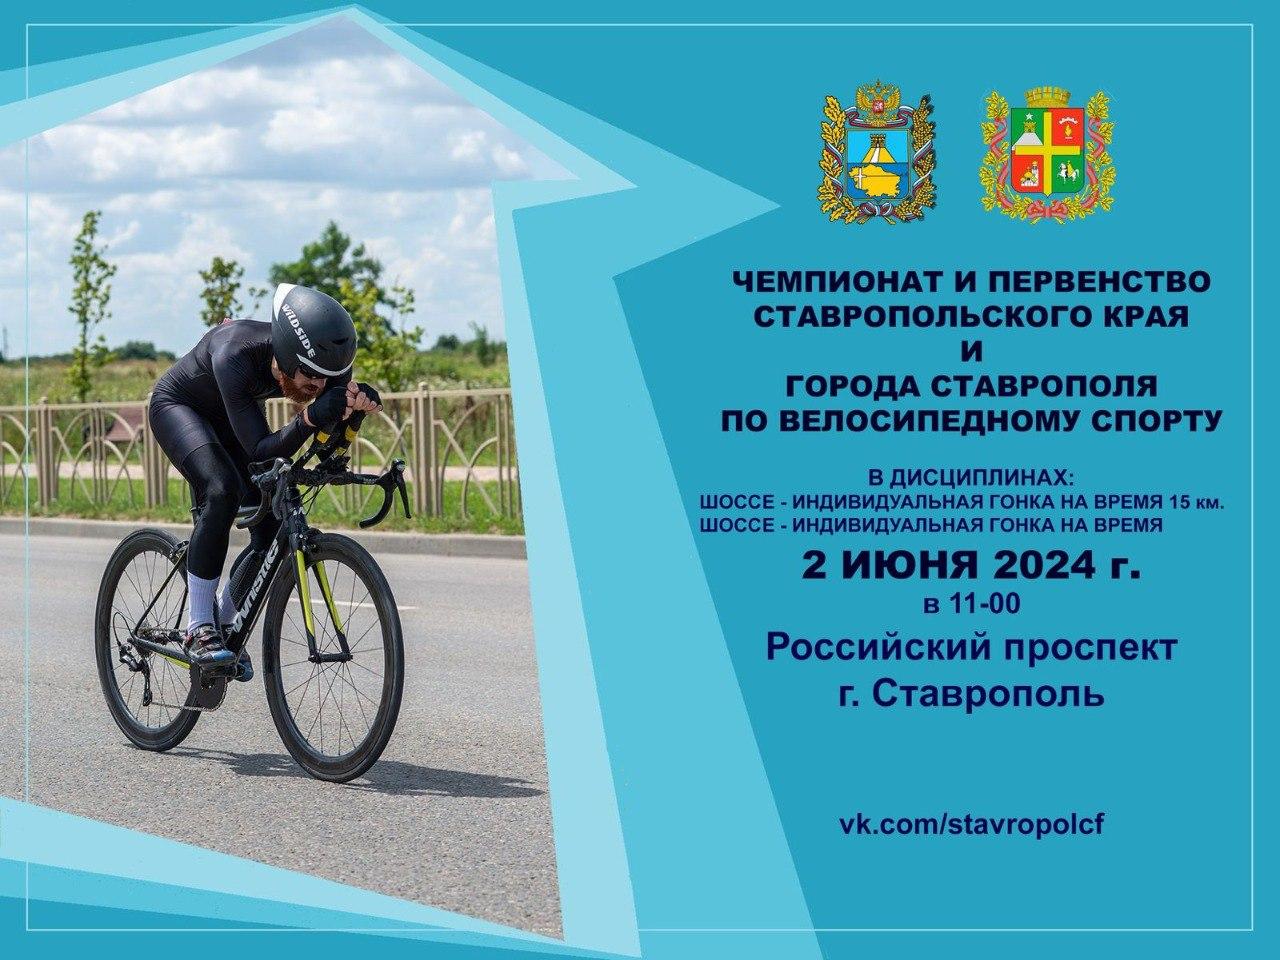 Движение в юго-западной части Ставрополя ограничат на время проведения соревнований по велоспорту 2 июня